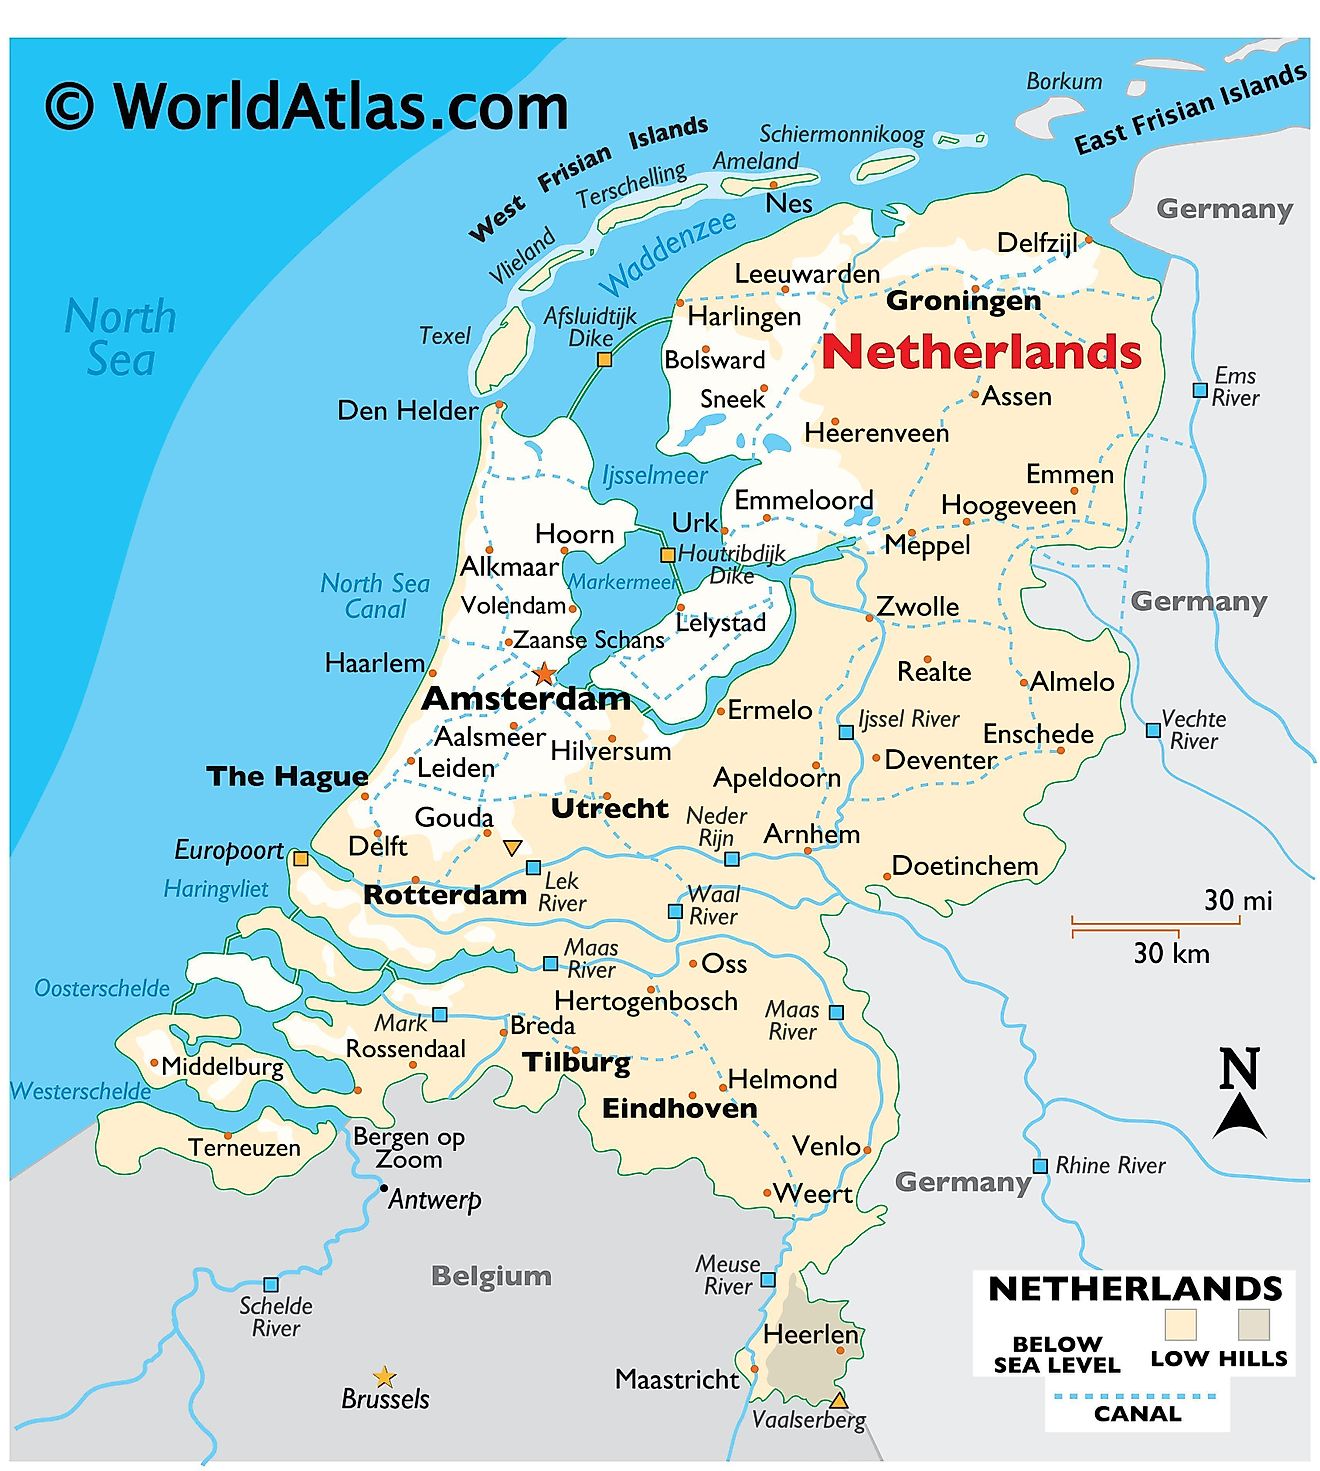 Physikalische Karte der Niederlande mit Relief, internationalen Grenzen, großen Flüssen, Extrempunkten, wichtigen Städten, Inseln usw.